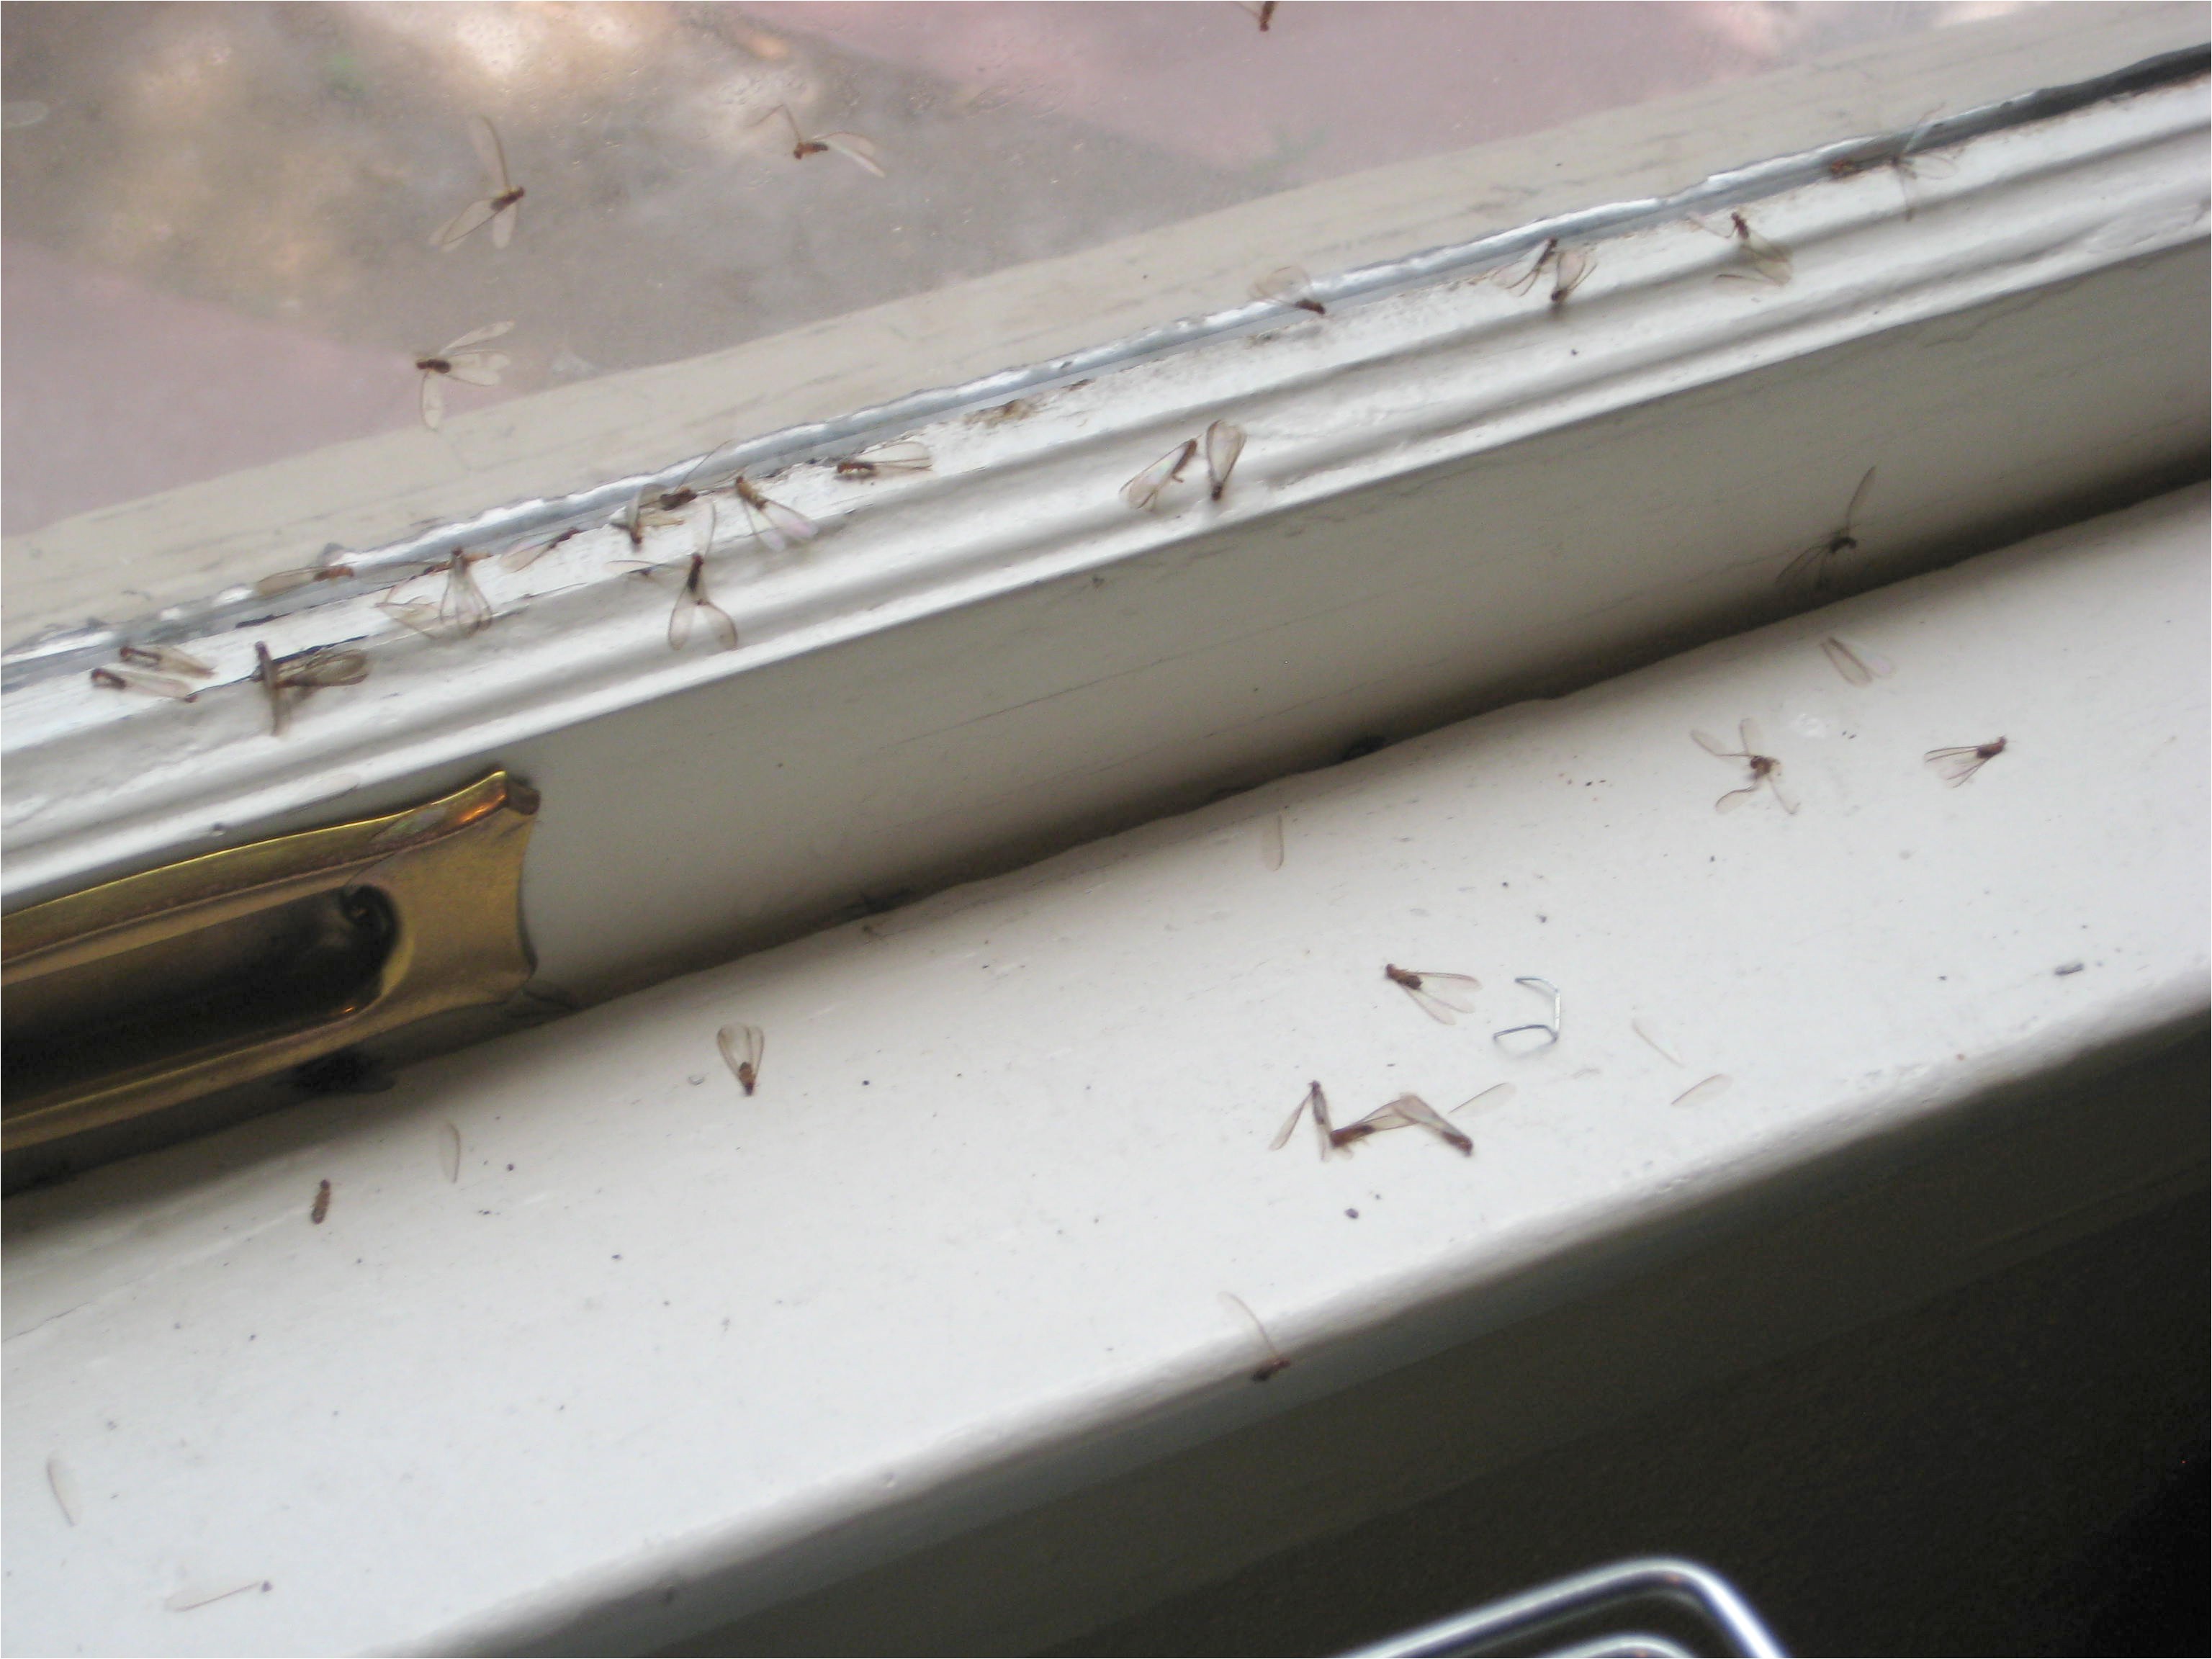 termite wings on window sill